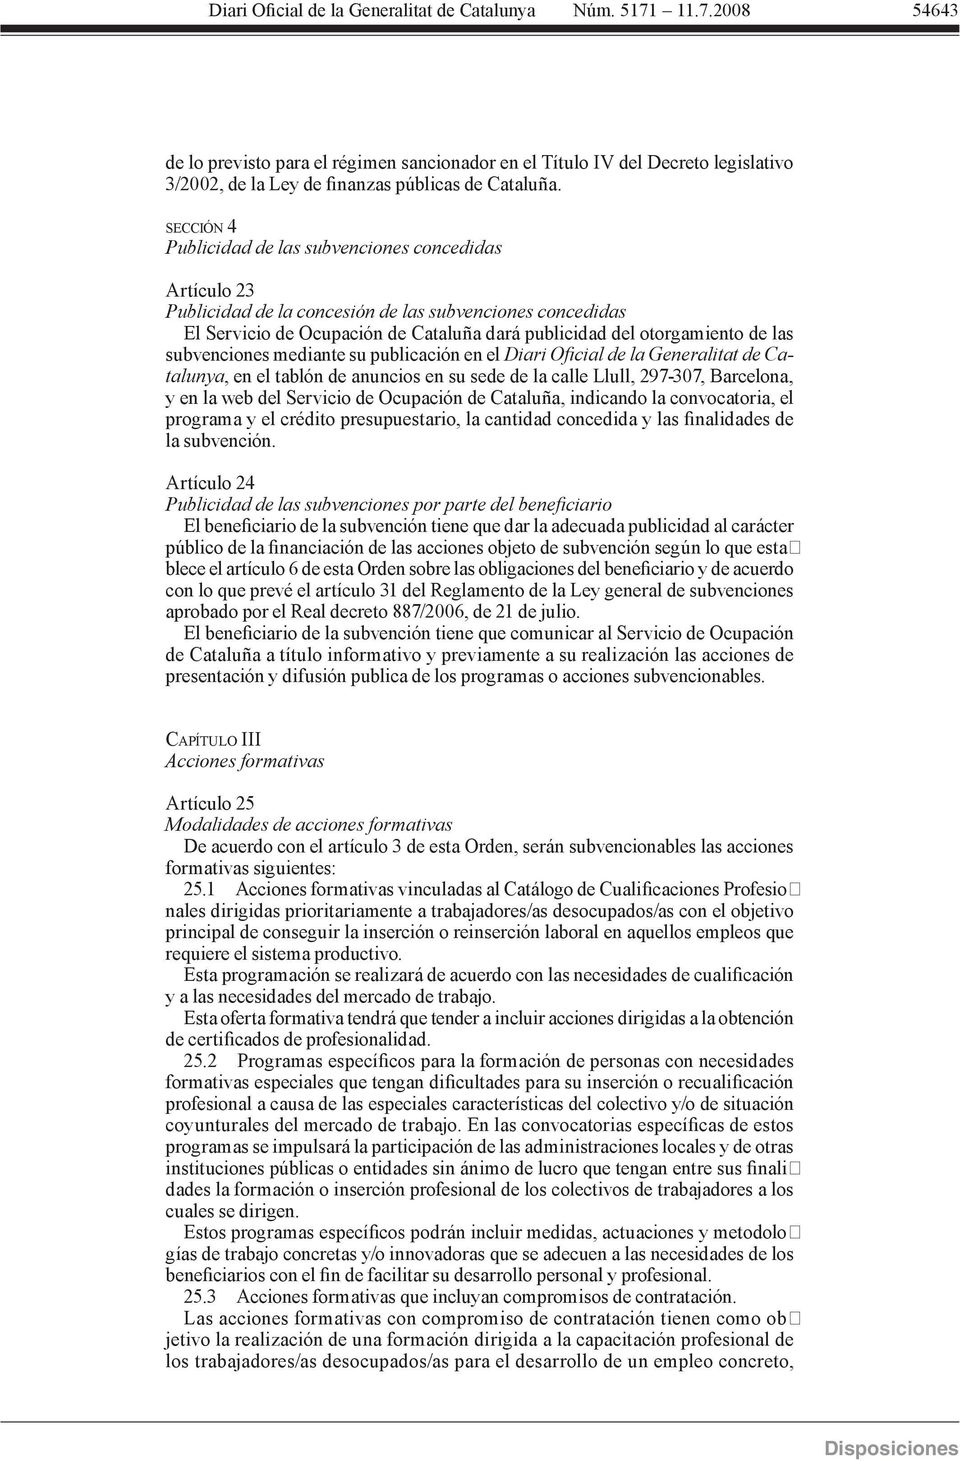 subvenciones mediante su publicación en el Diari Oicial de la Generalitat de Catalunya, en el tablón de anuncios en su sede de la calle Llull, 297-307, Barcelona, y en la web del Servicio de